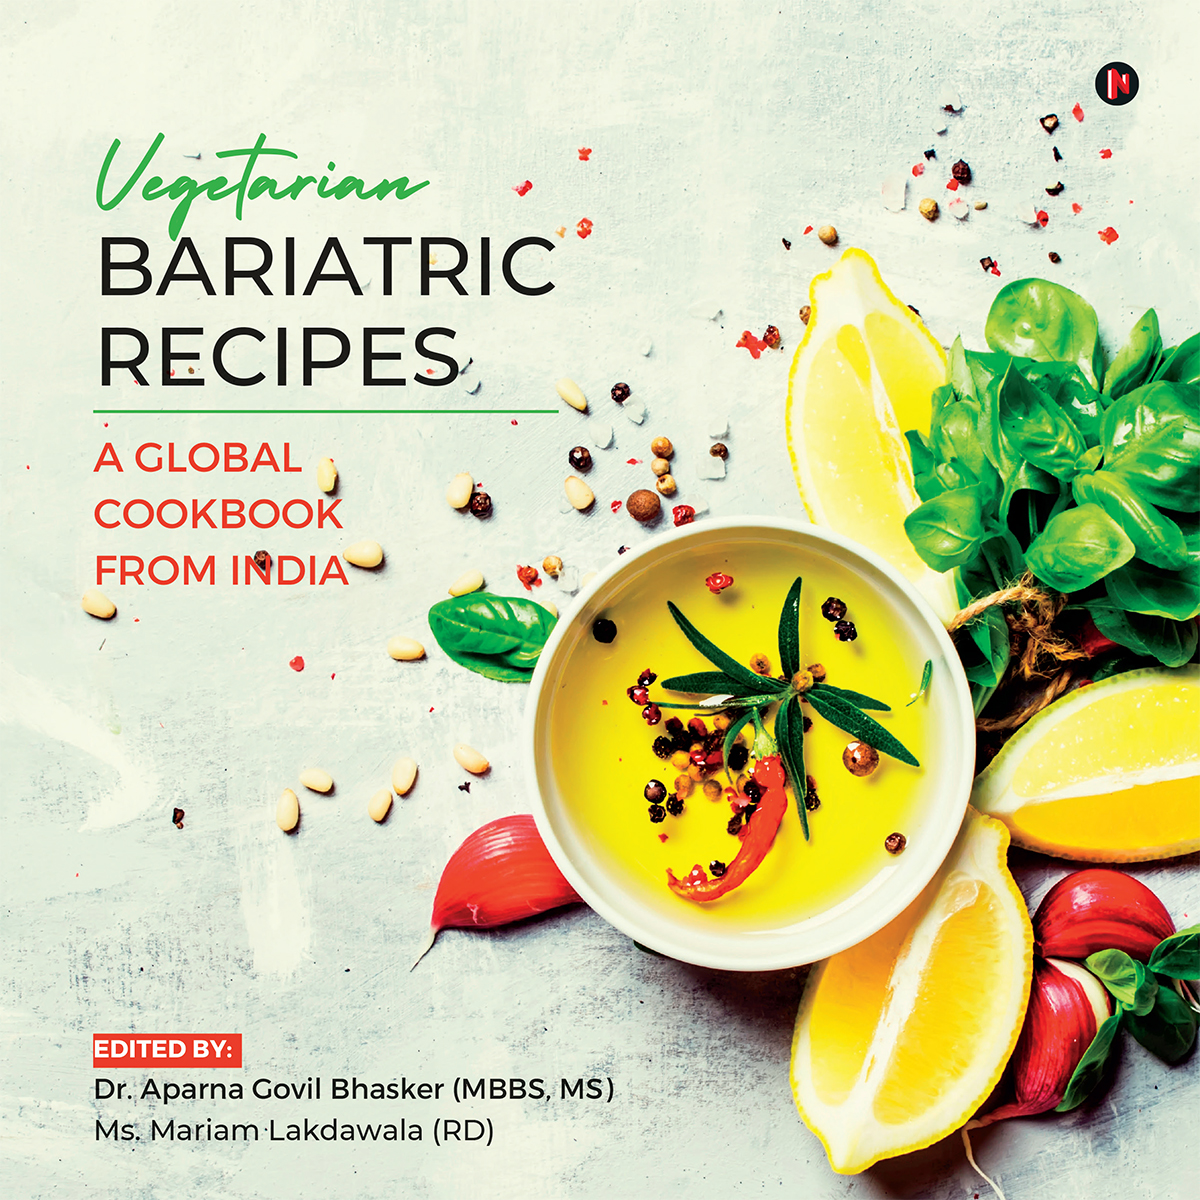 Bariatric Meal Planning for Vegans - Vegan Bariatric Dietitian